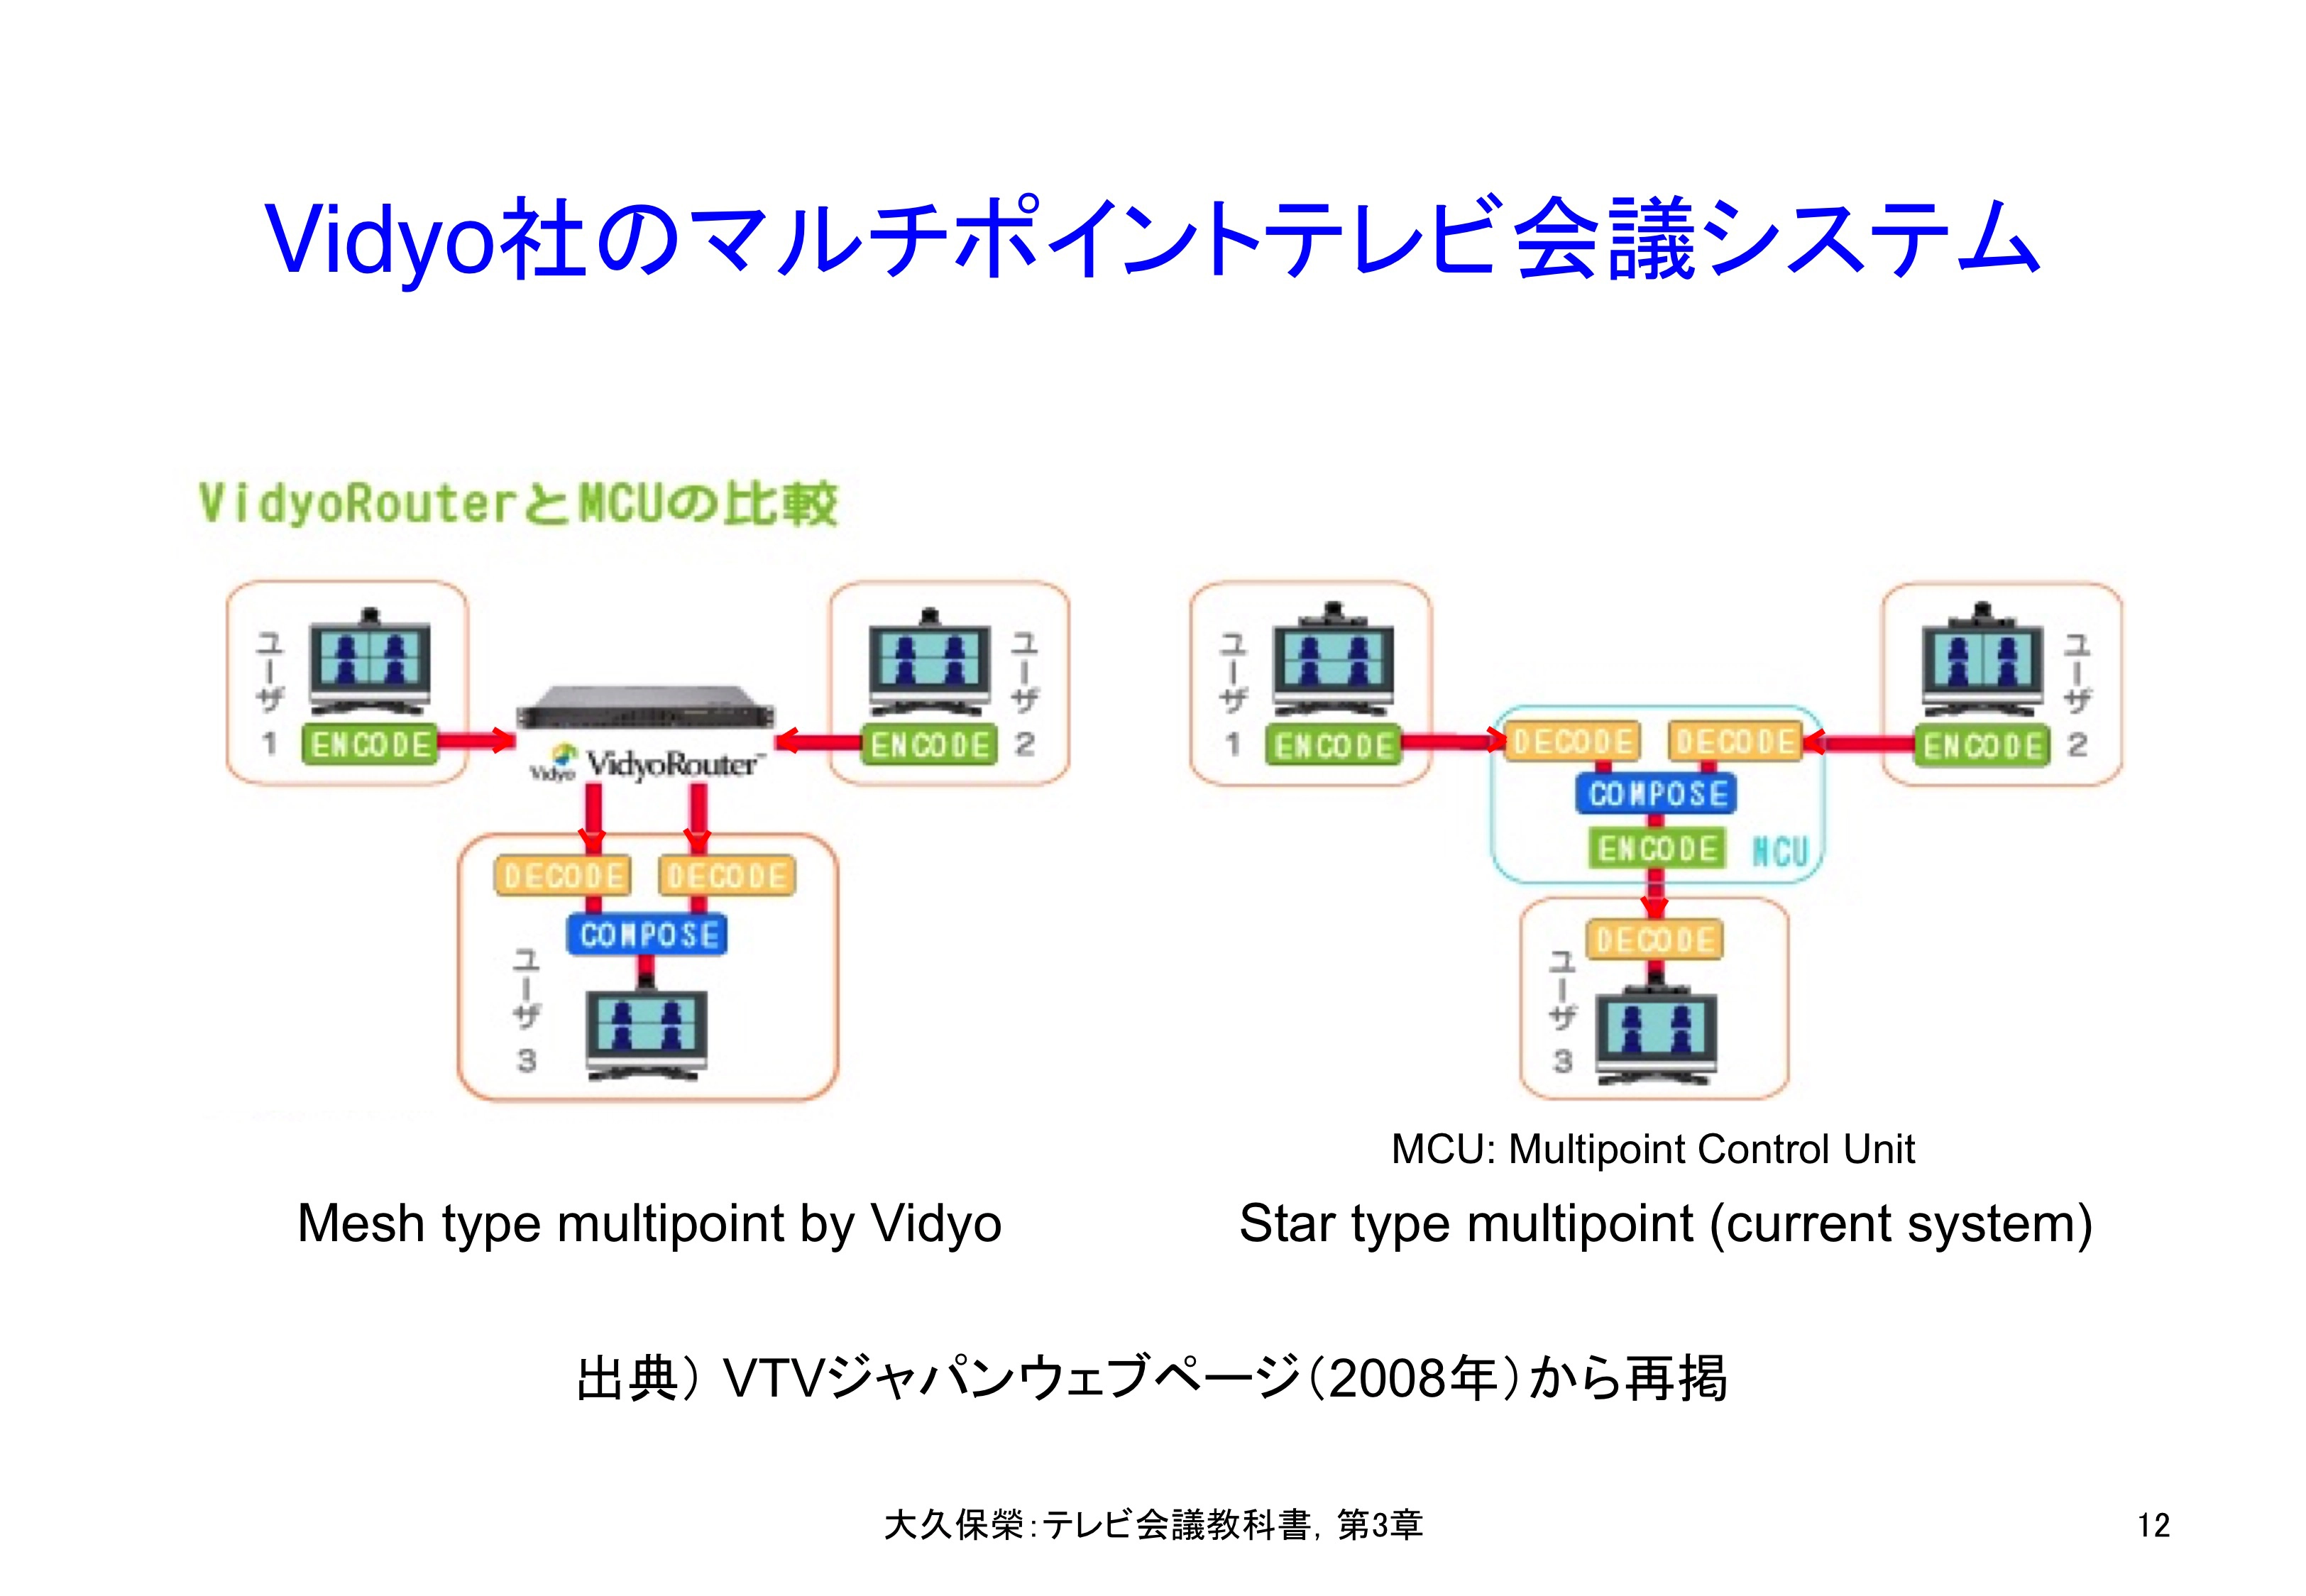 図3-12 Vidyo社のマルチポイントテレビ会議システム